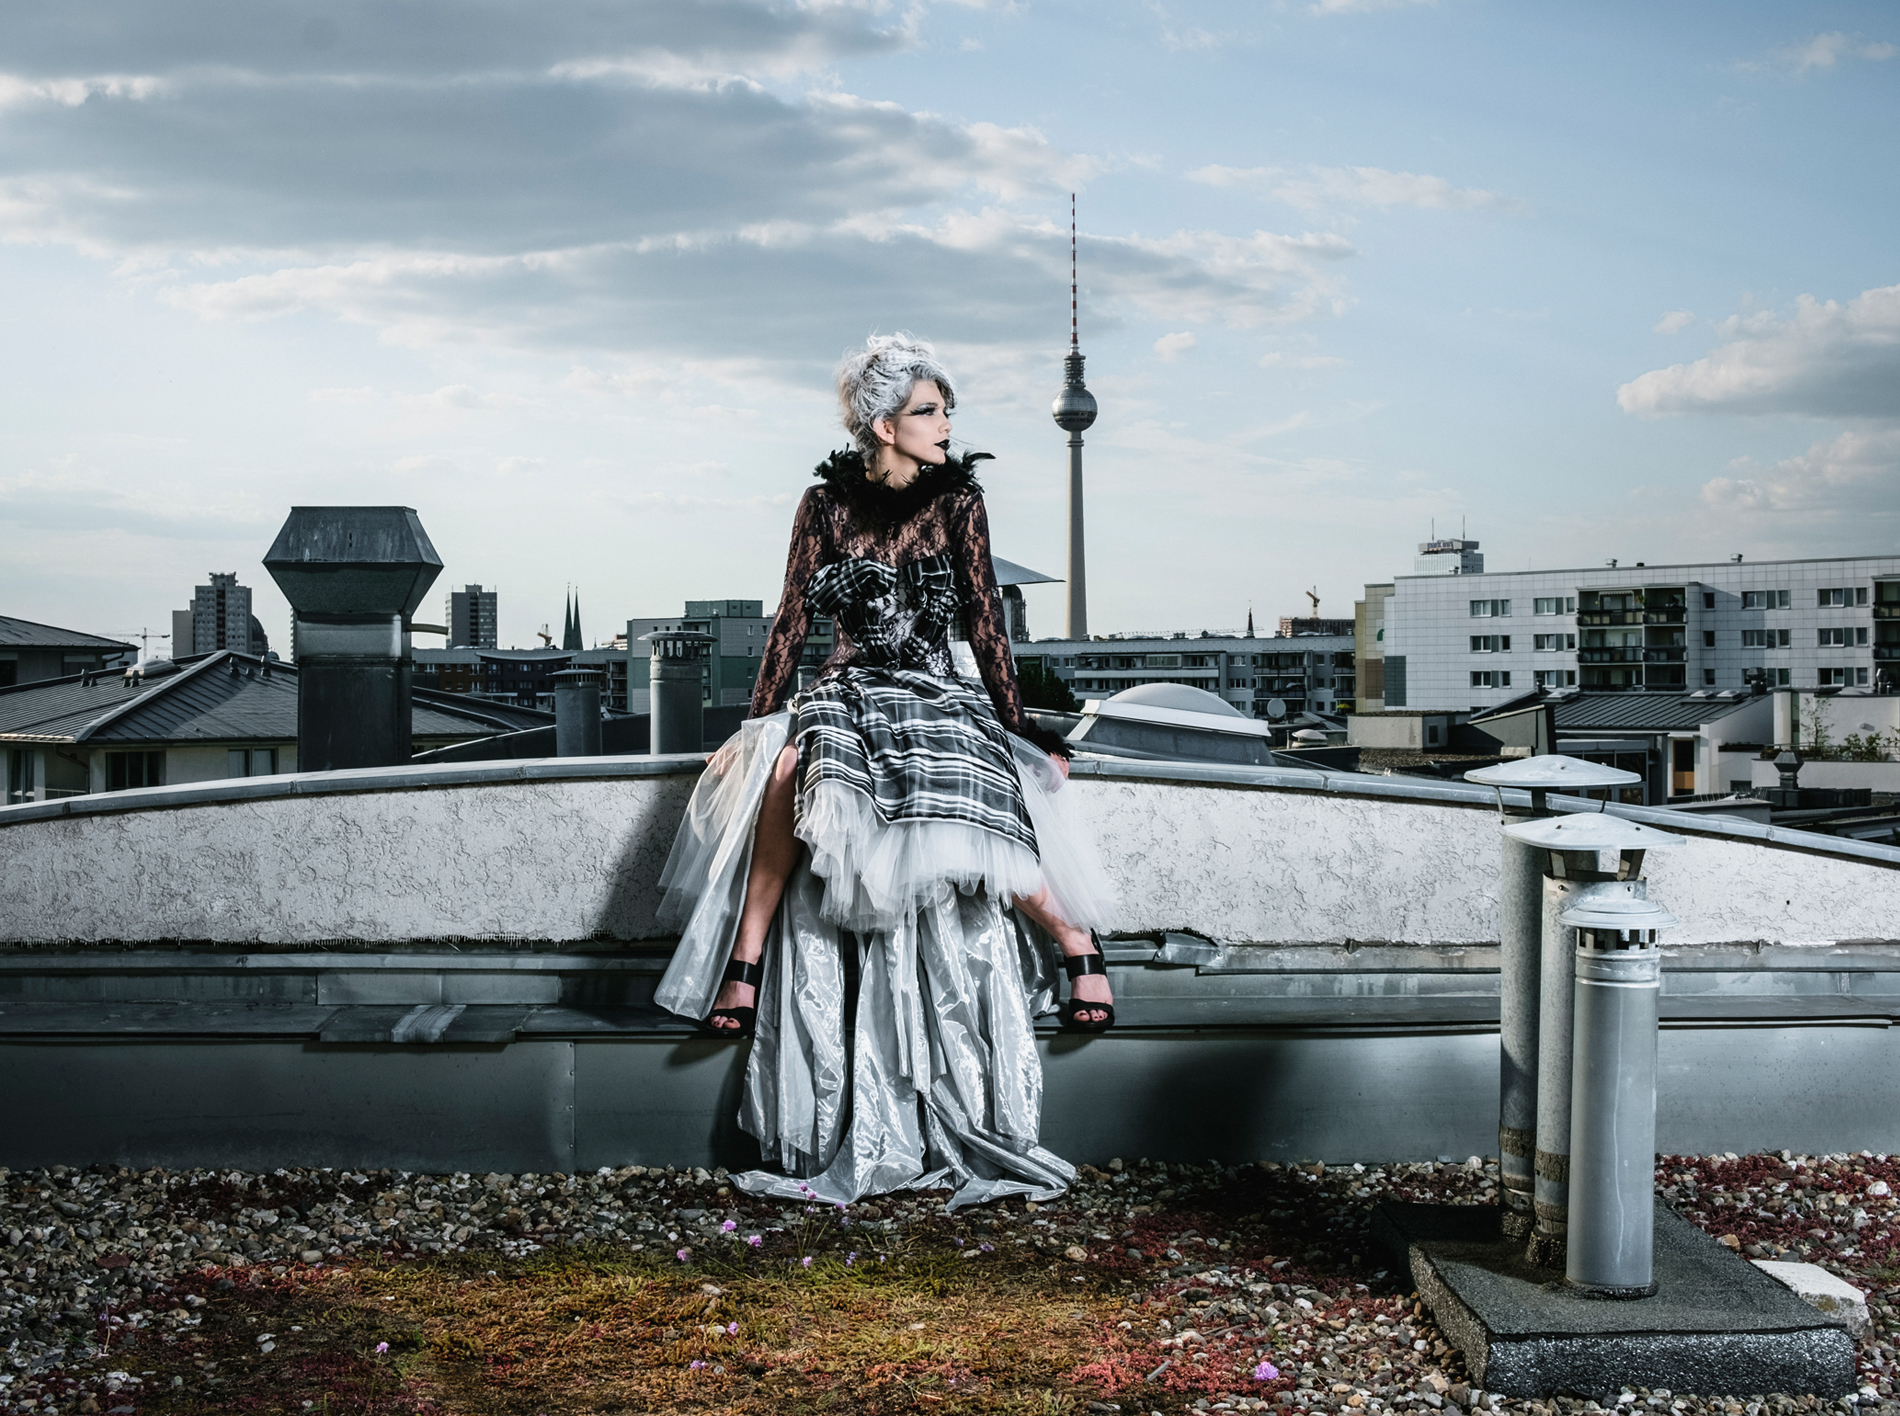 Berlin Event Fashion Style von Kaska Hass – Luxus, Sinnlichkeit, Mut und Humor – glamourös, dynamisch, extravagant